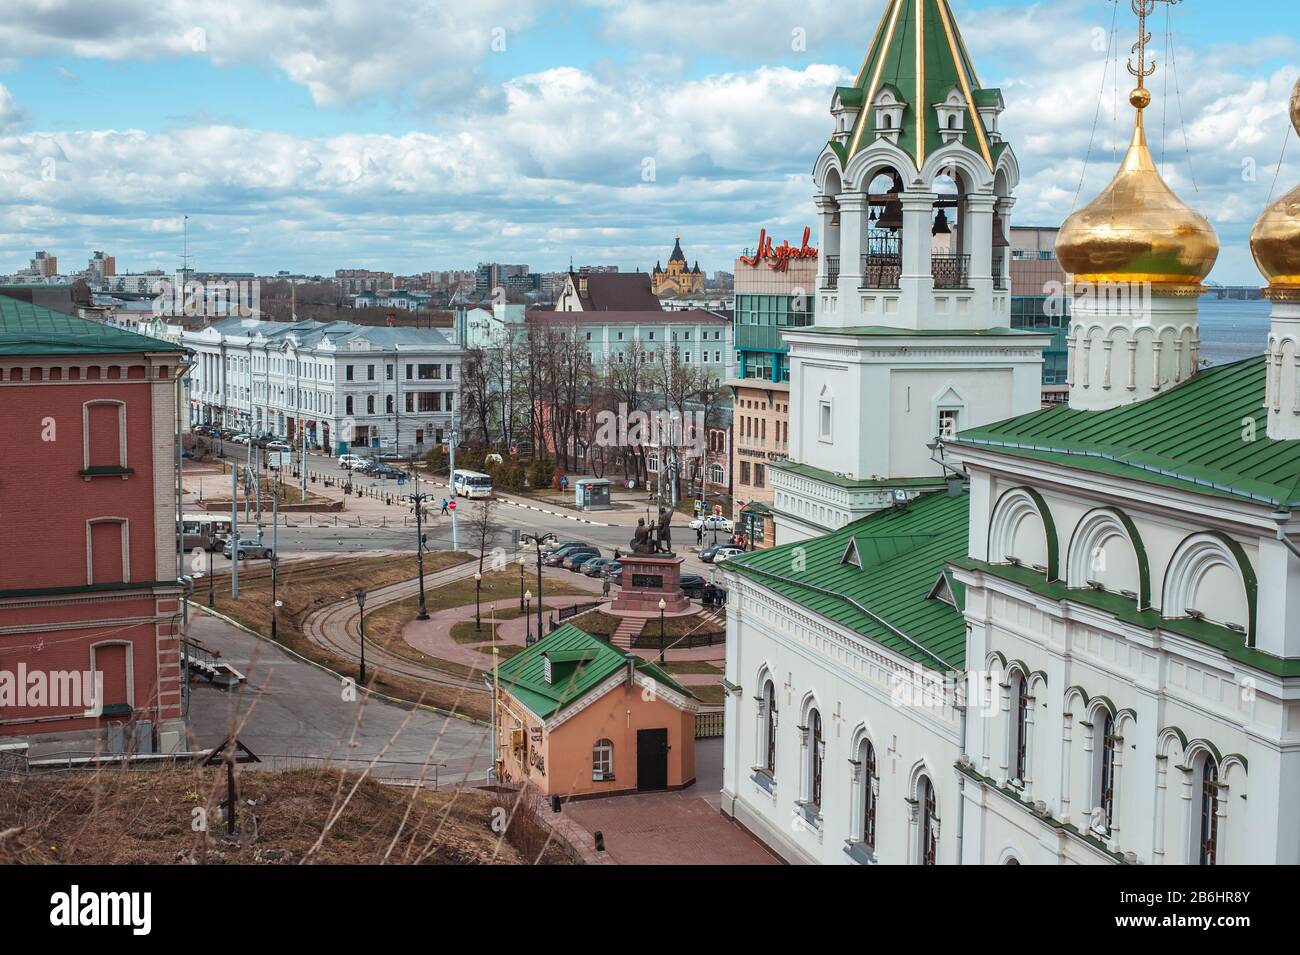 NIZHNY NOVGOROD, RUSSIA - APRIL, 23, 2017: The Baptist Church, Alexander Chapel, gatehouse, Monument to Minin and Pozharsky on unity square in Nizhny Stock Photo